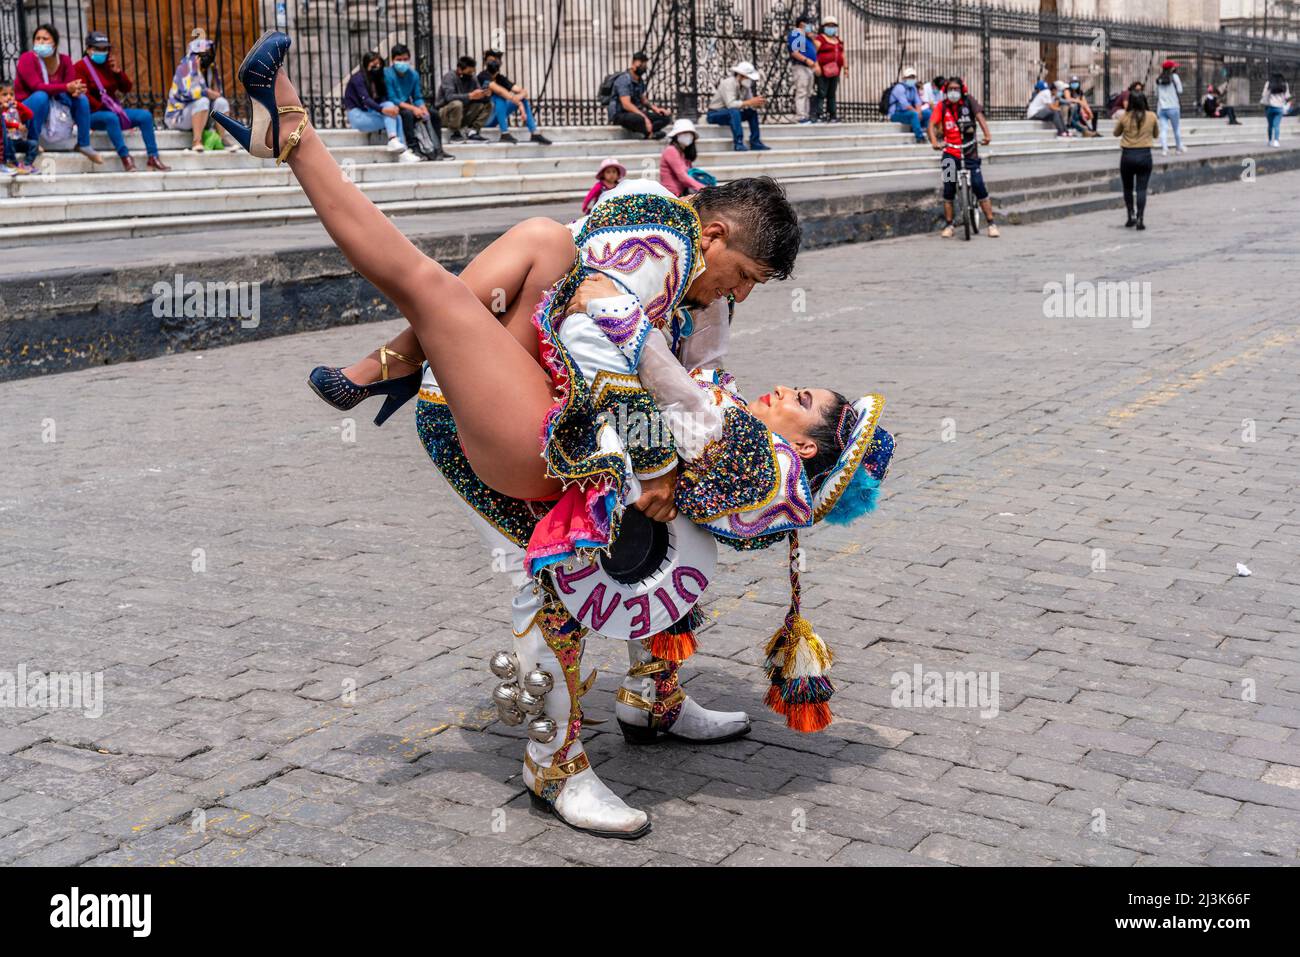 Les jeunes d'Une troupe de danse traditionnelle se font jouer sur la Plaza de Armas (place principale) Arequipa, région d'Arequipa, Pérou. Banque D'Images